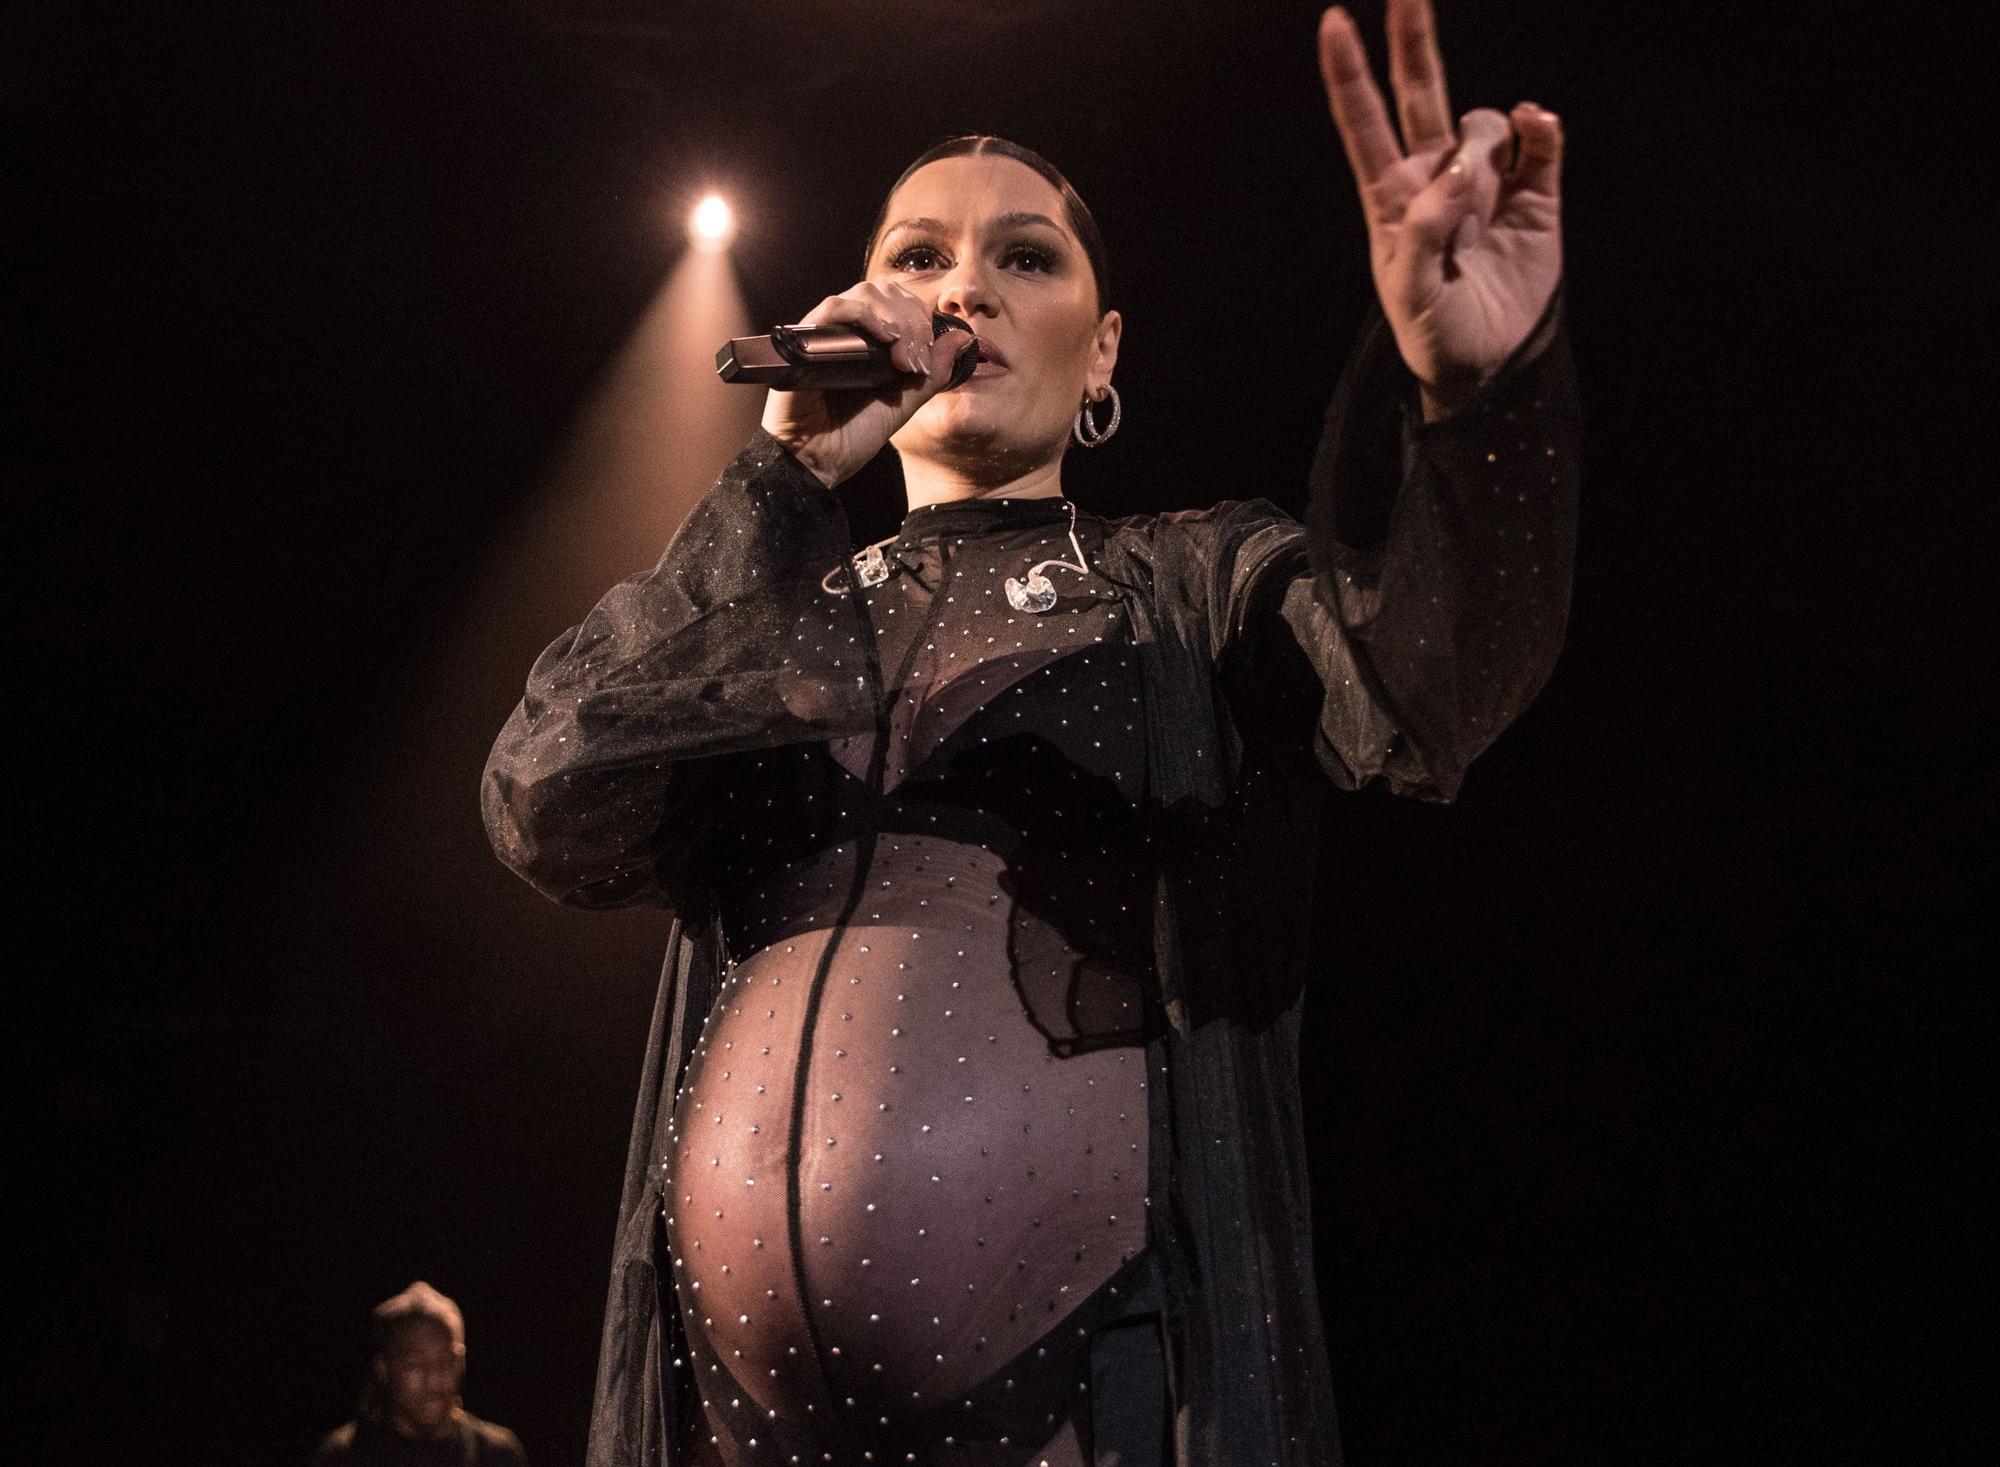 El último concierto de Jessie J antes de dar a luz